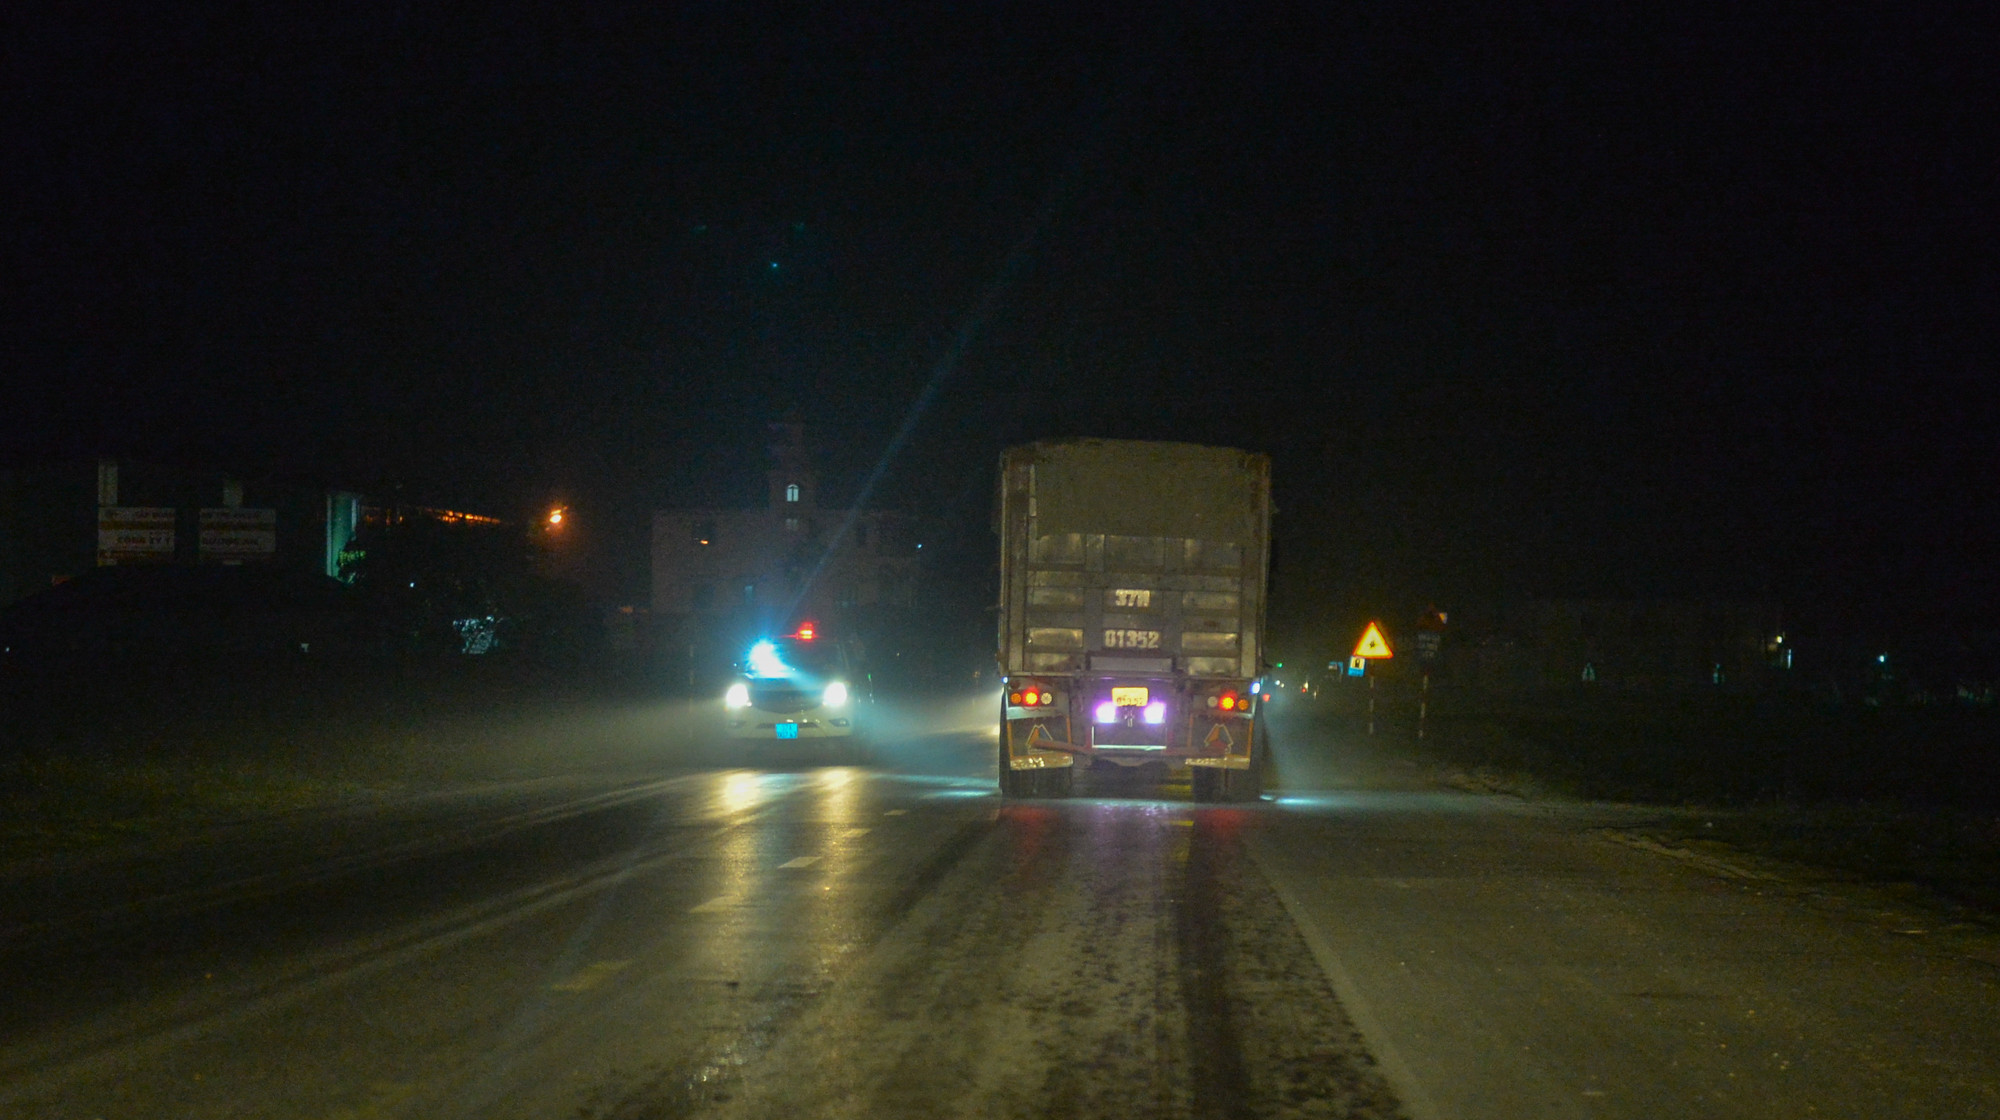  xe tải này gặp xe tuần tra của CSGT đi ngược chiều. Tuy nhiên sau khi người ngồi bên phụ của xe CSGT soi đèn bin qua thì chiếc xe tải 37H-01352 tiếp tục lưu thông bình thường